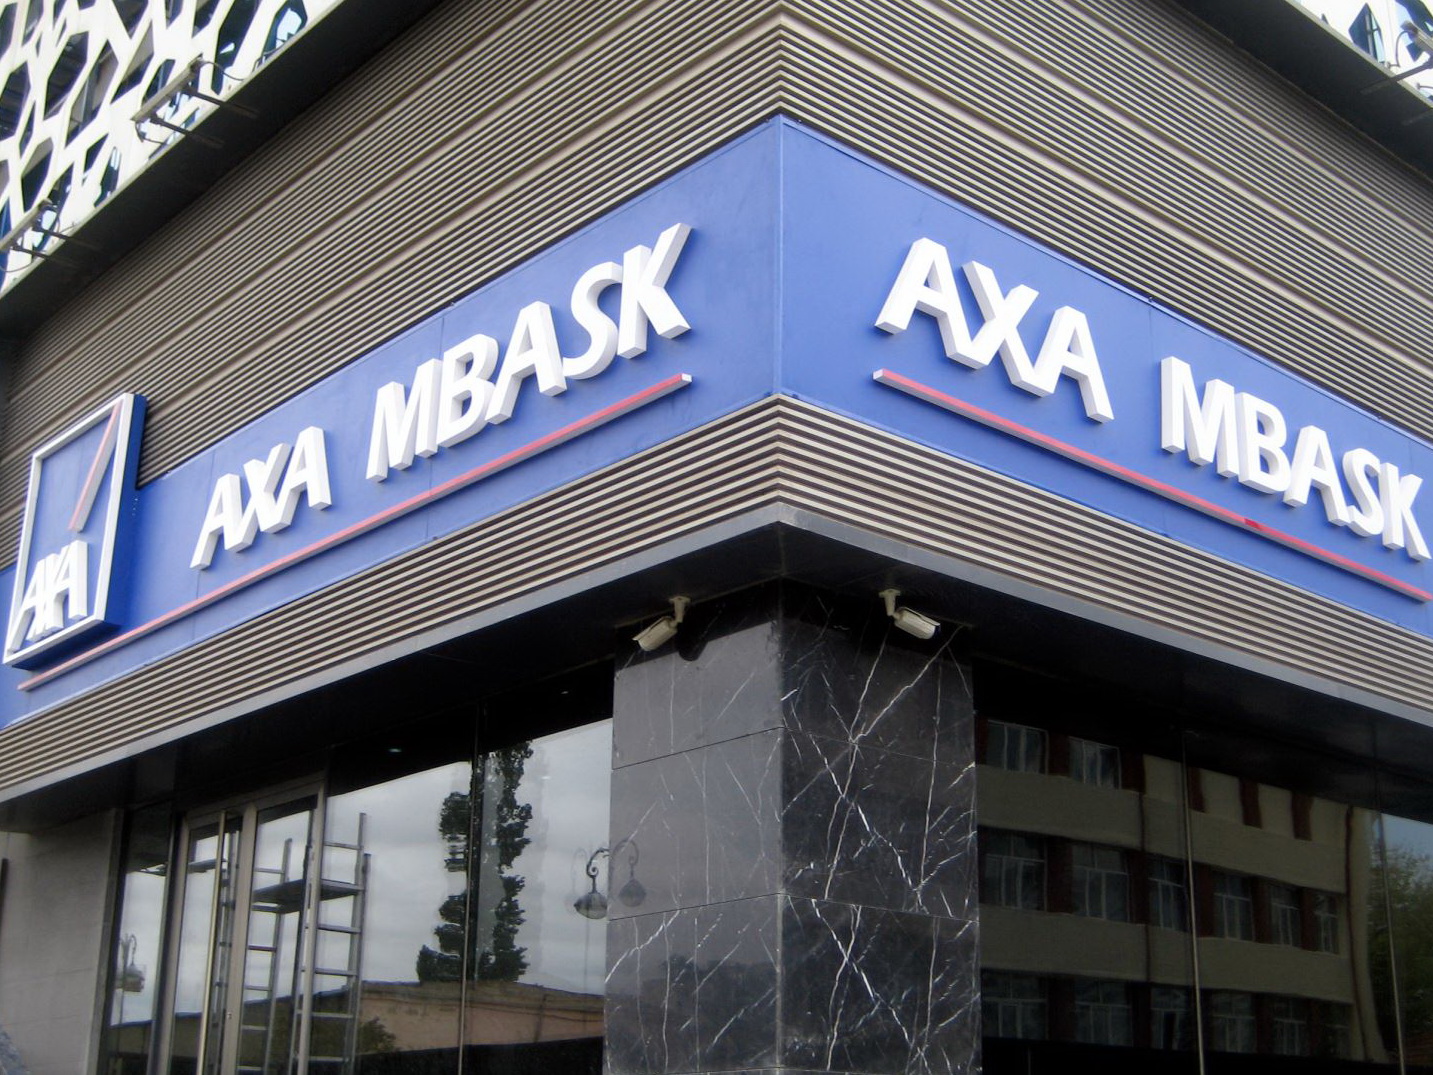 Дело AXA MBASK: покинет ли рынок одна из старейших страховых компаний Азербайджана?